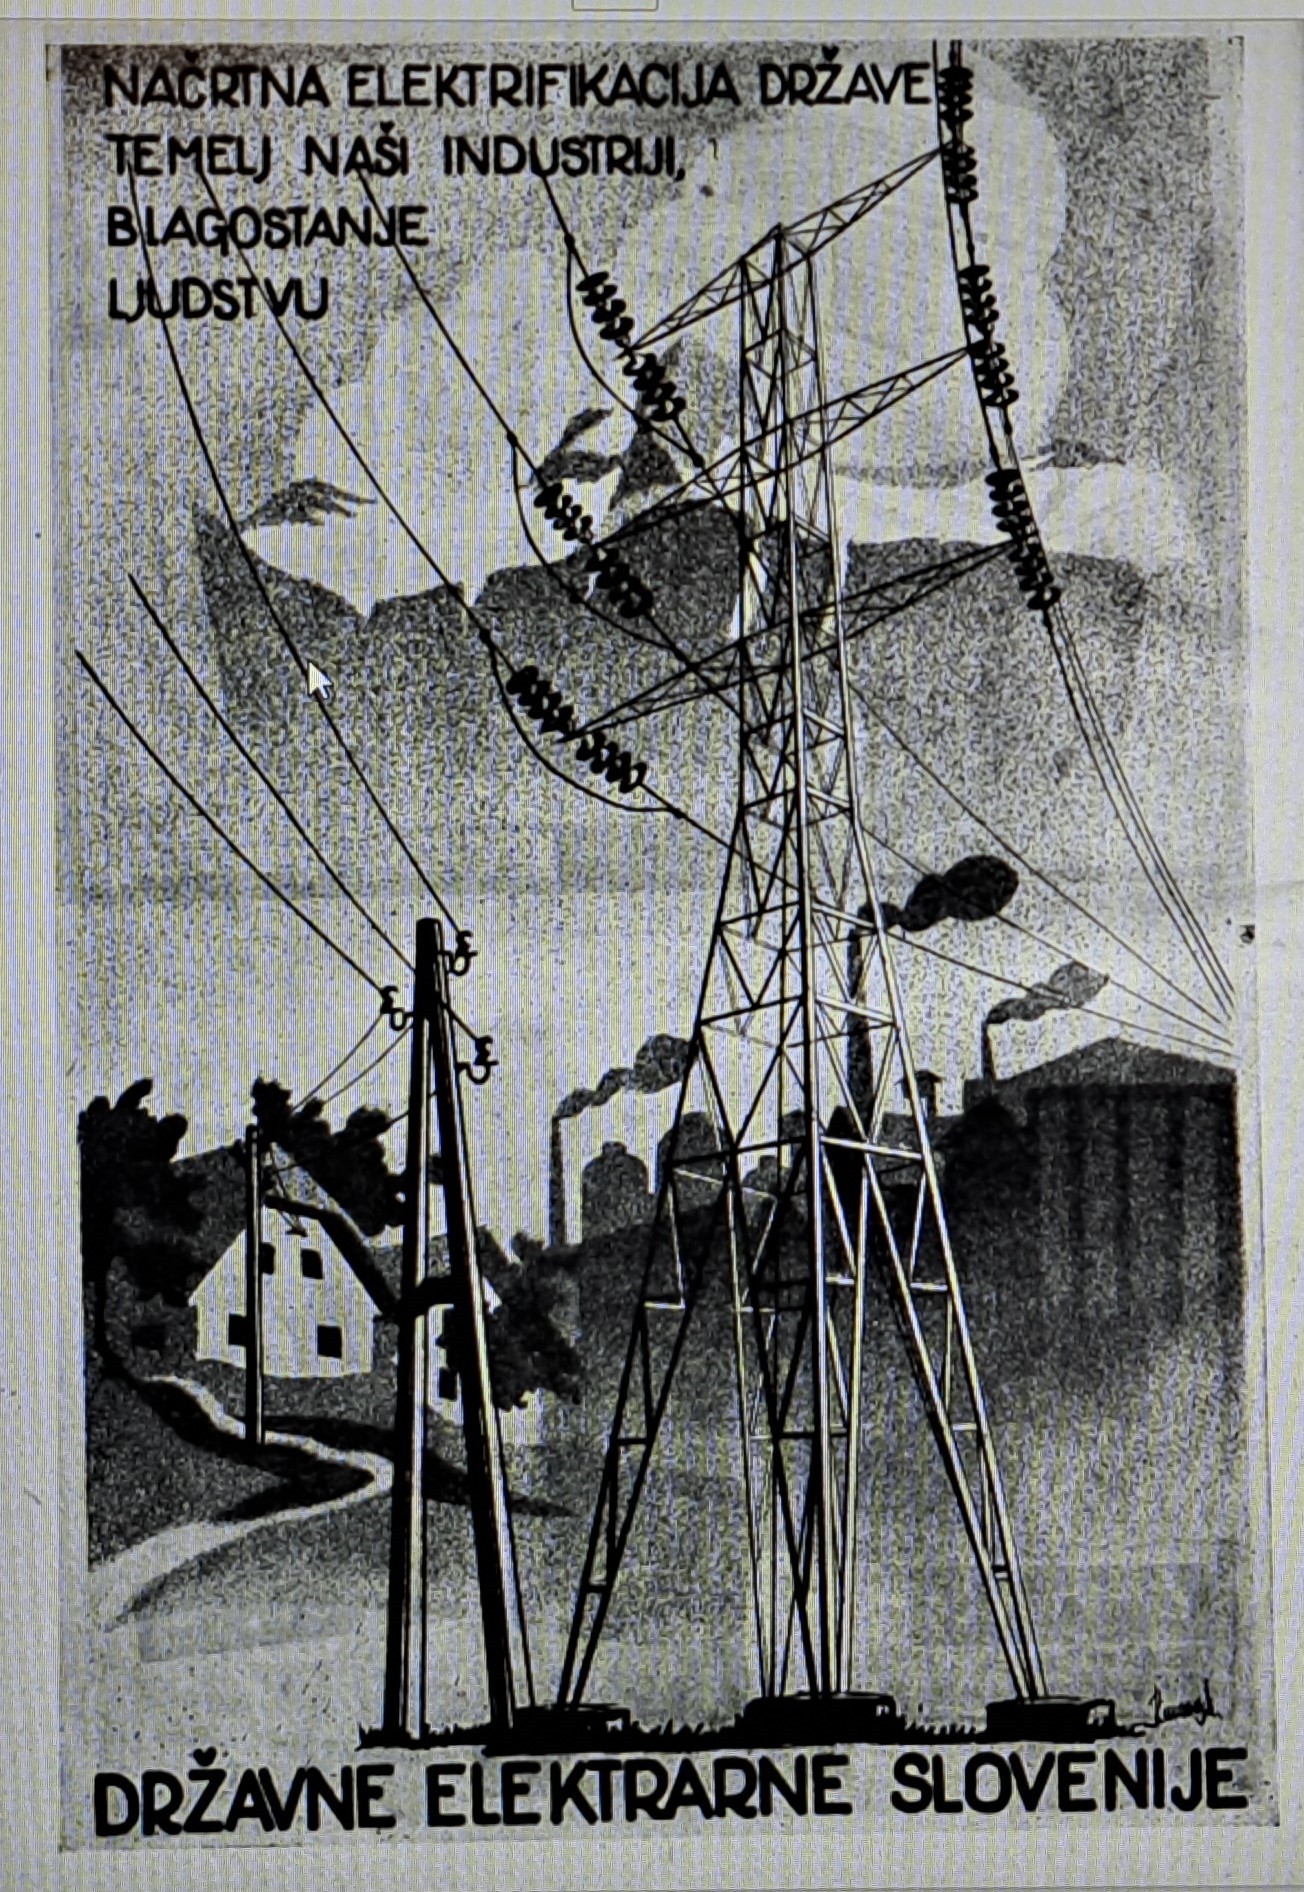 Slika 4: Oglas v Koledarju OF Slovenije leta 1948 o načrtni
                        elektrifikaciji kot temelju industrije in blagostanju ljudstva 